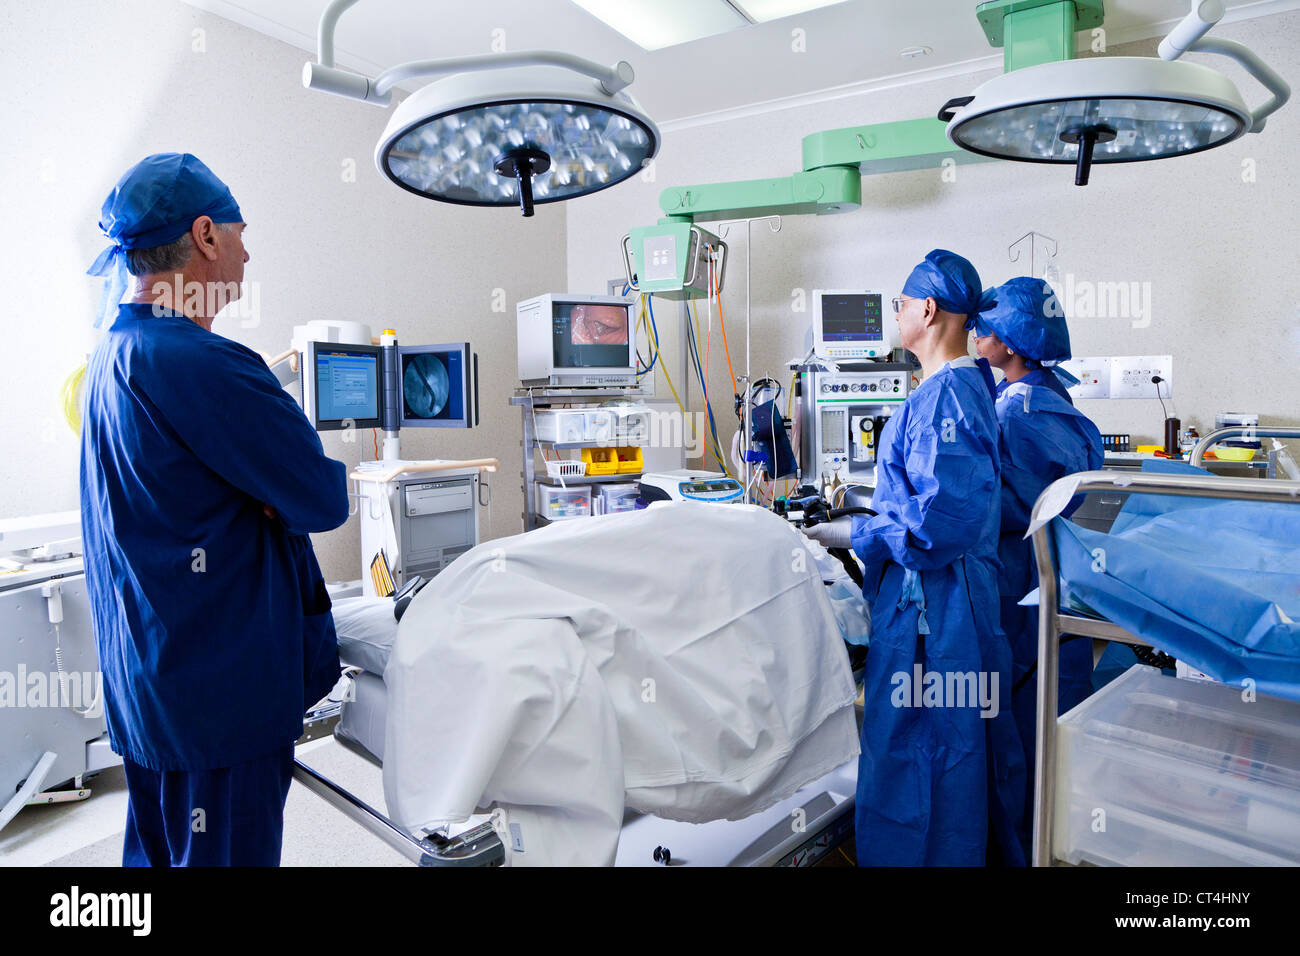 Chirurgie mit Tisch, Krankenschwestern und Chirurgen in Betrieb Stockfoto